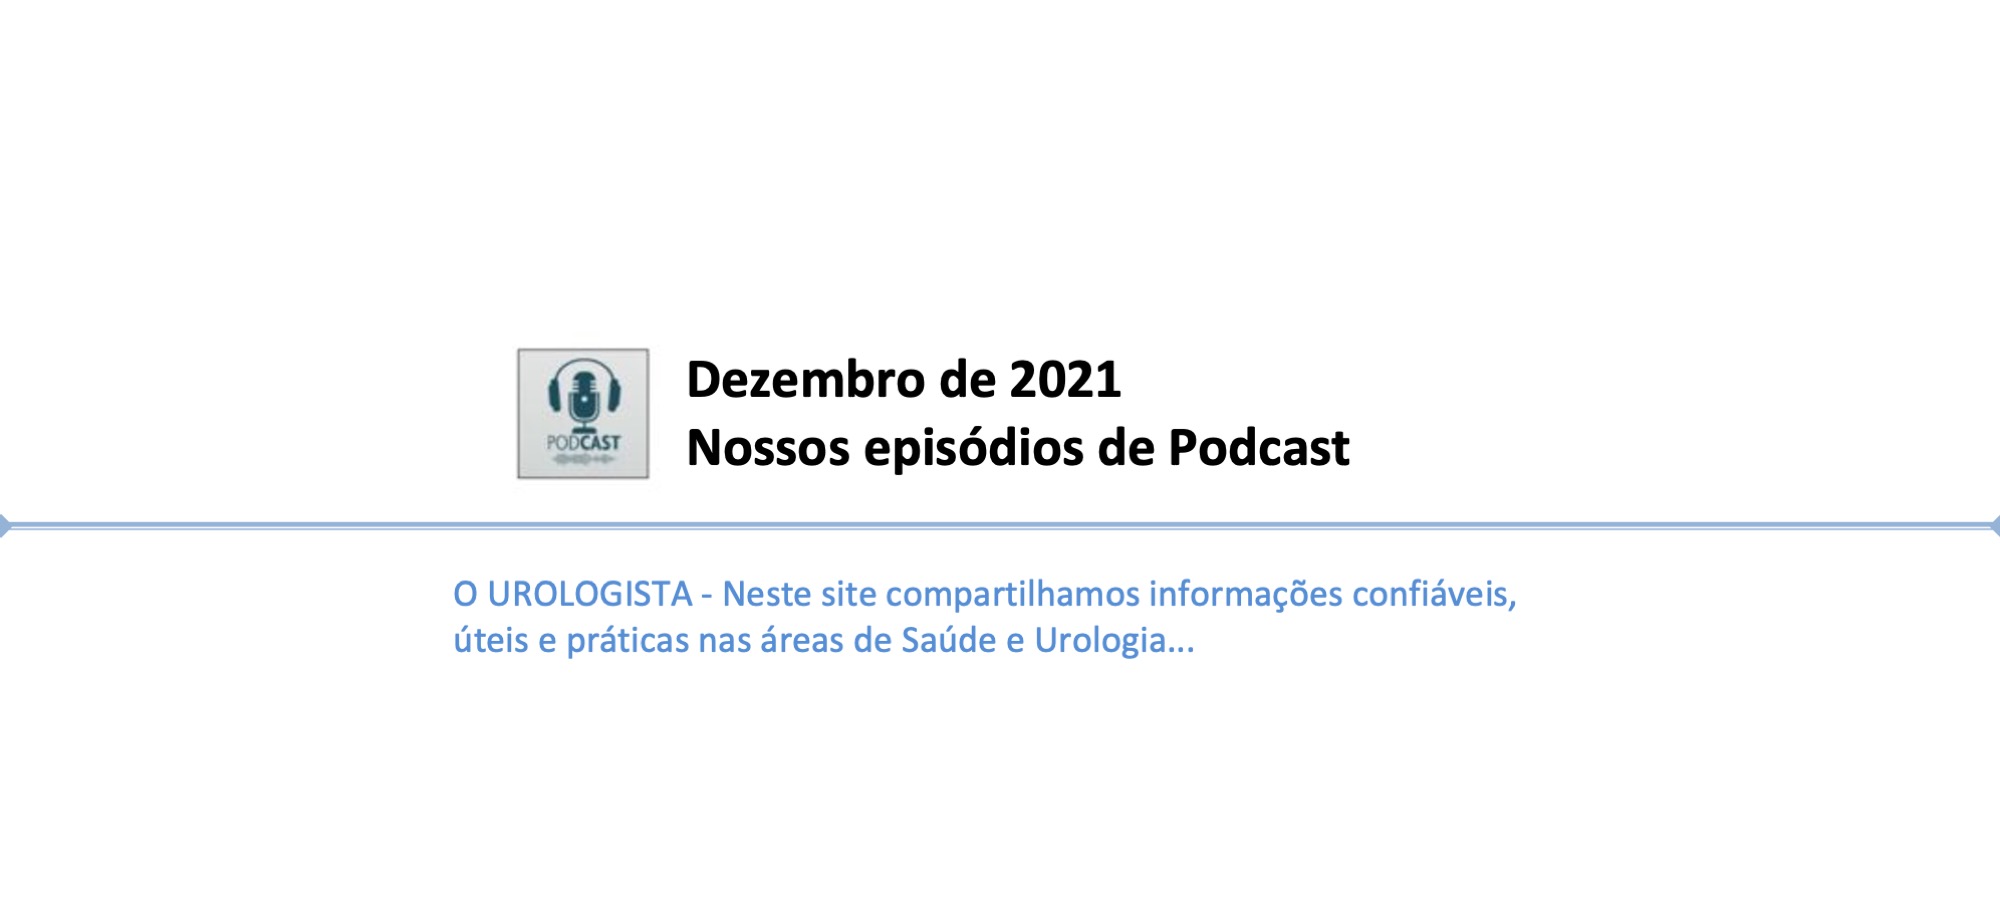 Dezembro de 2021: nossos episódios de Podcast